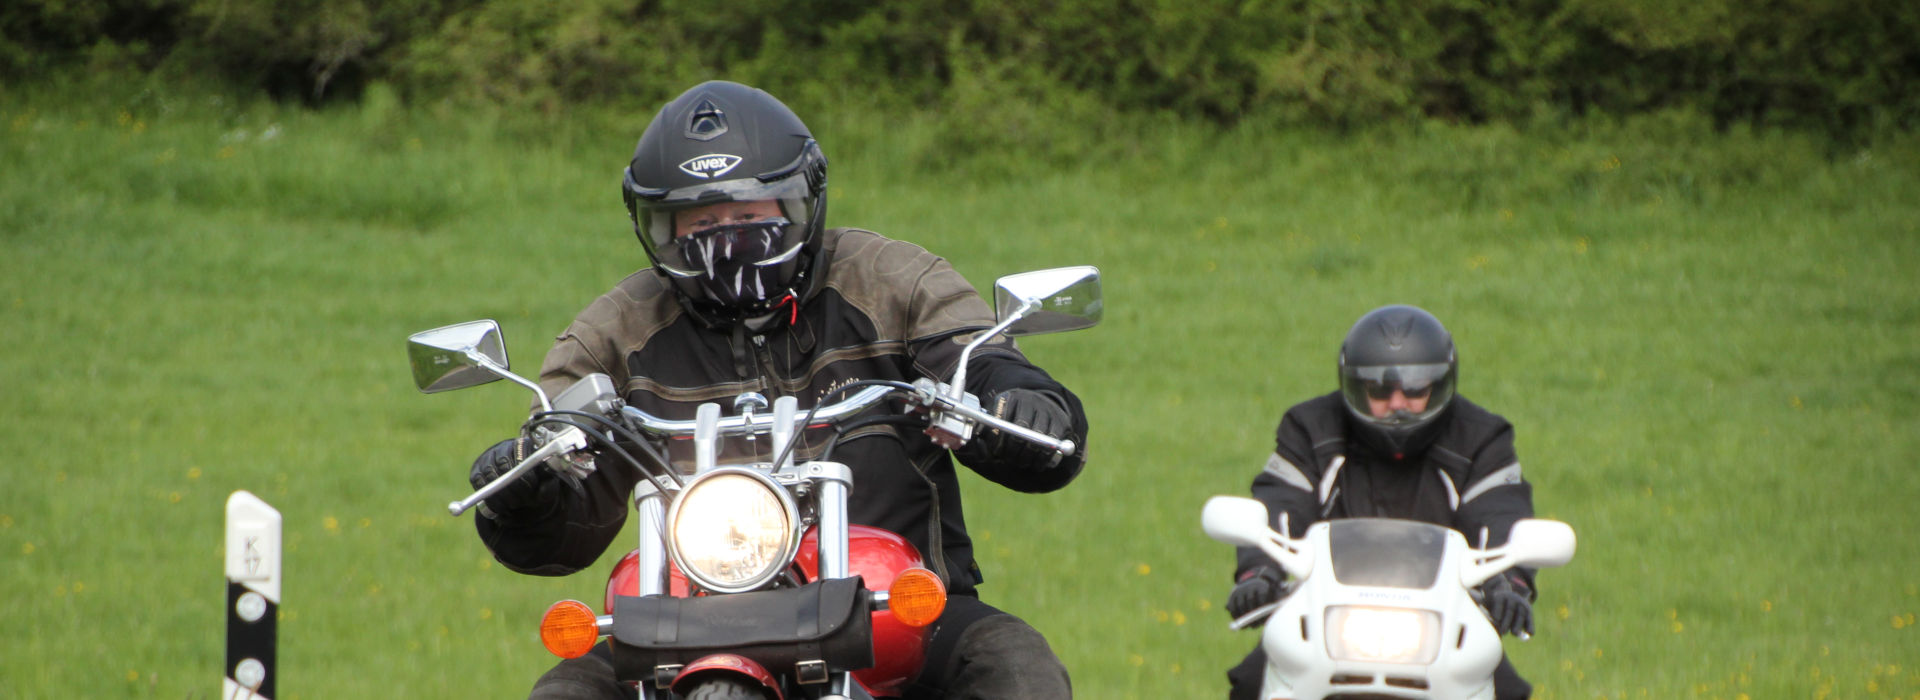 Motorrijschool Motorrijbewijspoint Nieuwkoop motorrijlessen